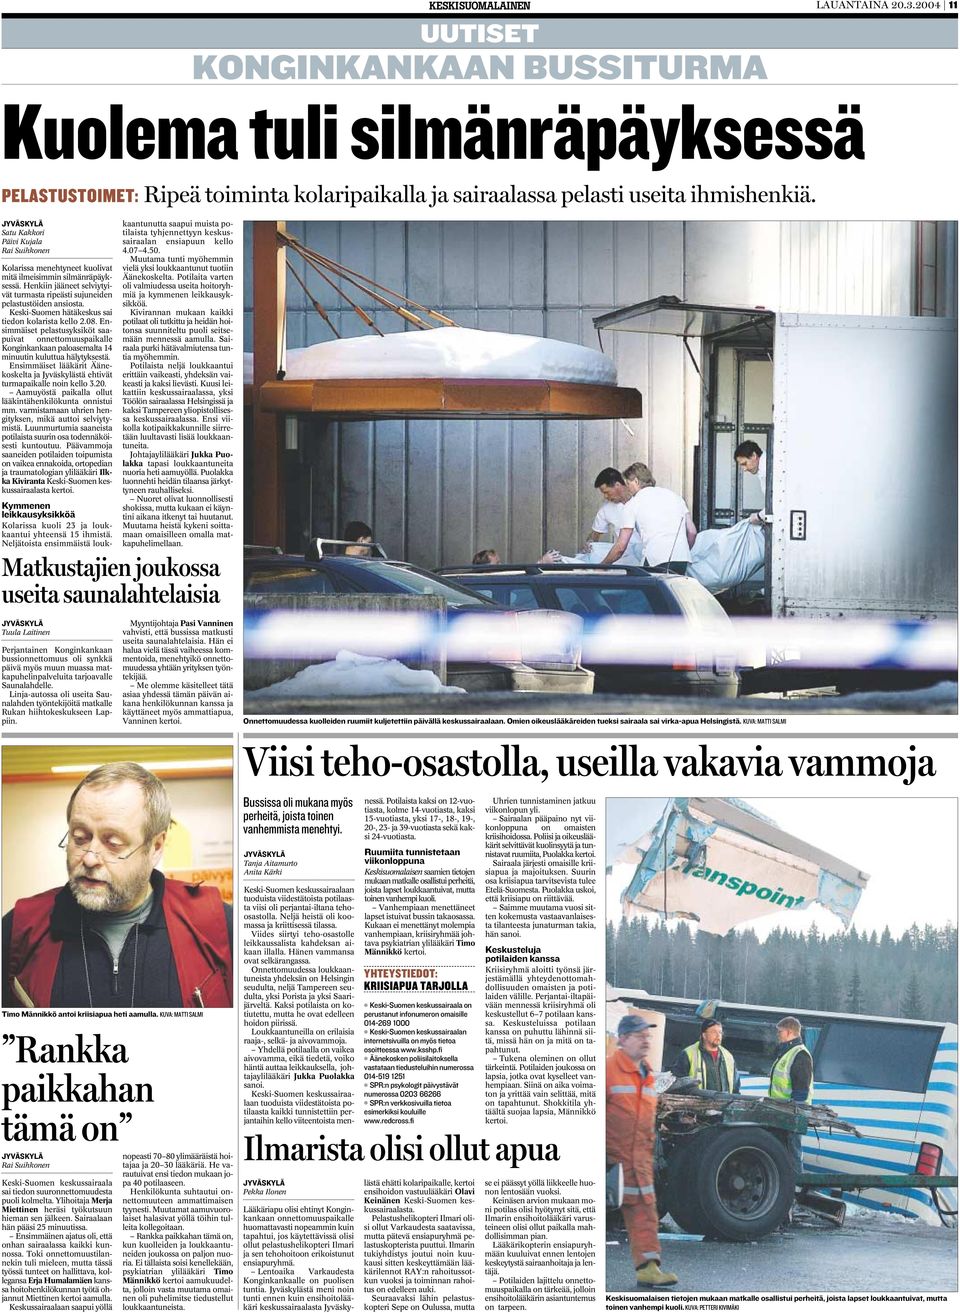 Keski-Suomen hätäkeskus sai tiedon kolarista kello 2.08. Ensimmäiset pelastusyksiköt saapuivat onnettomuuspaikalle Konginkankaan paloasemalta 14 minuutin kuluttua hälytyksestä.